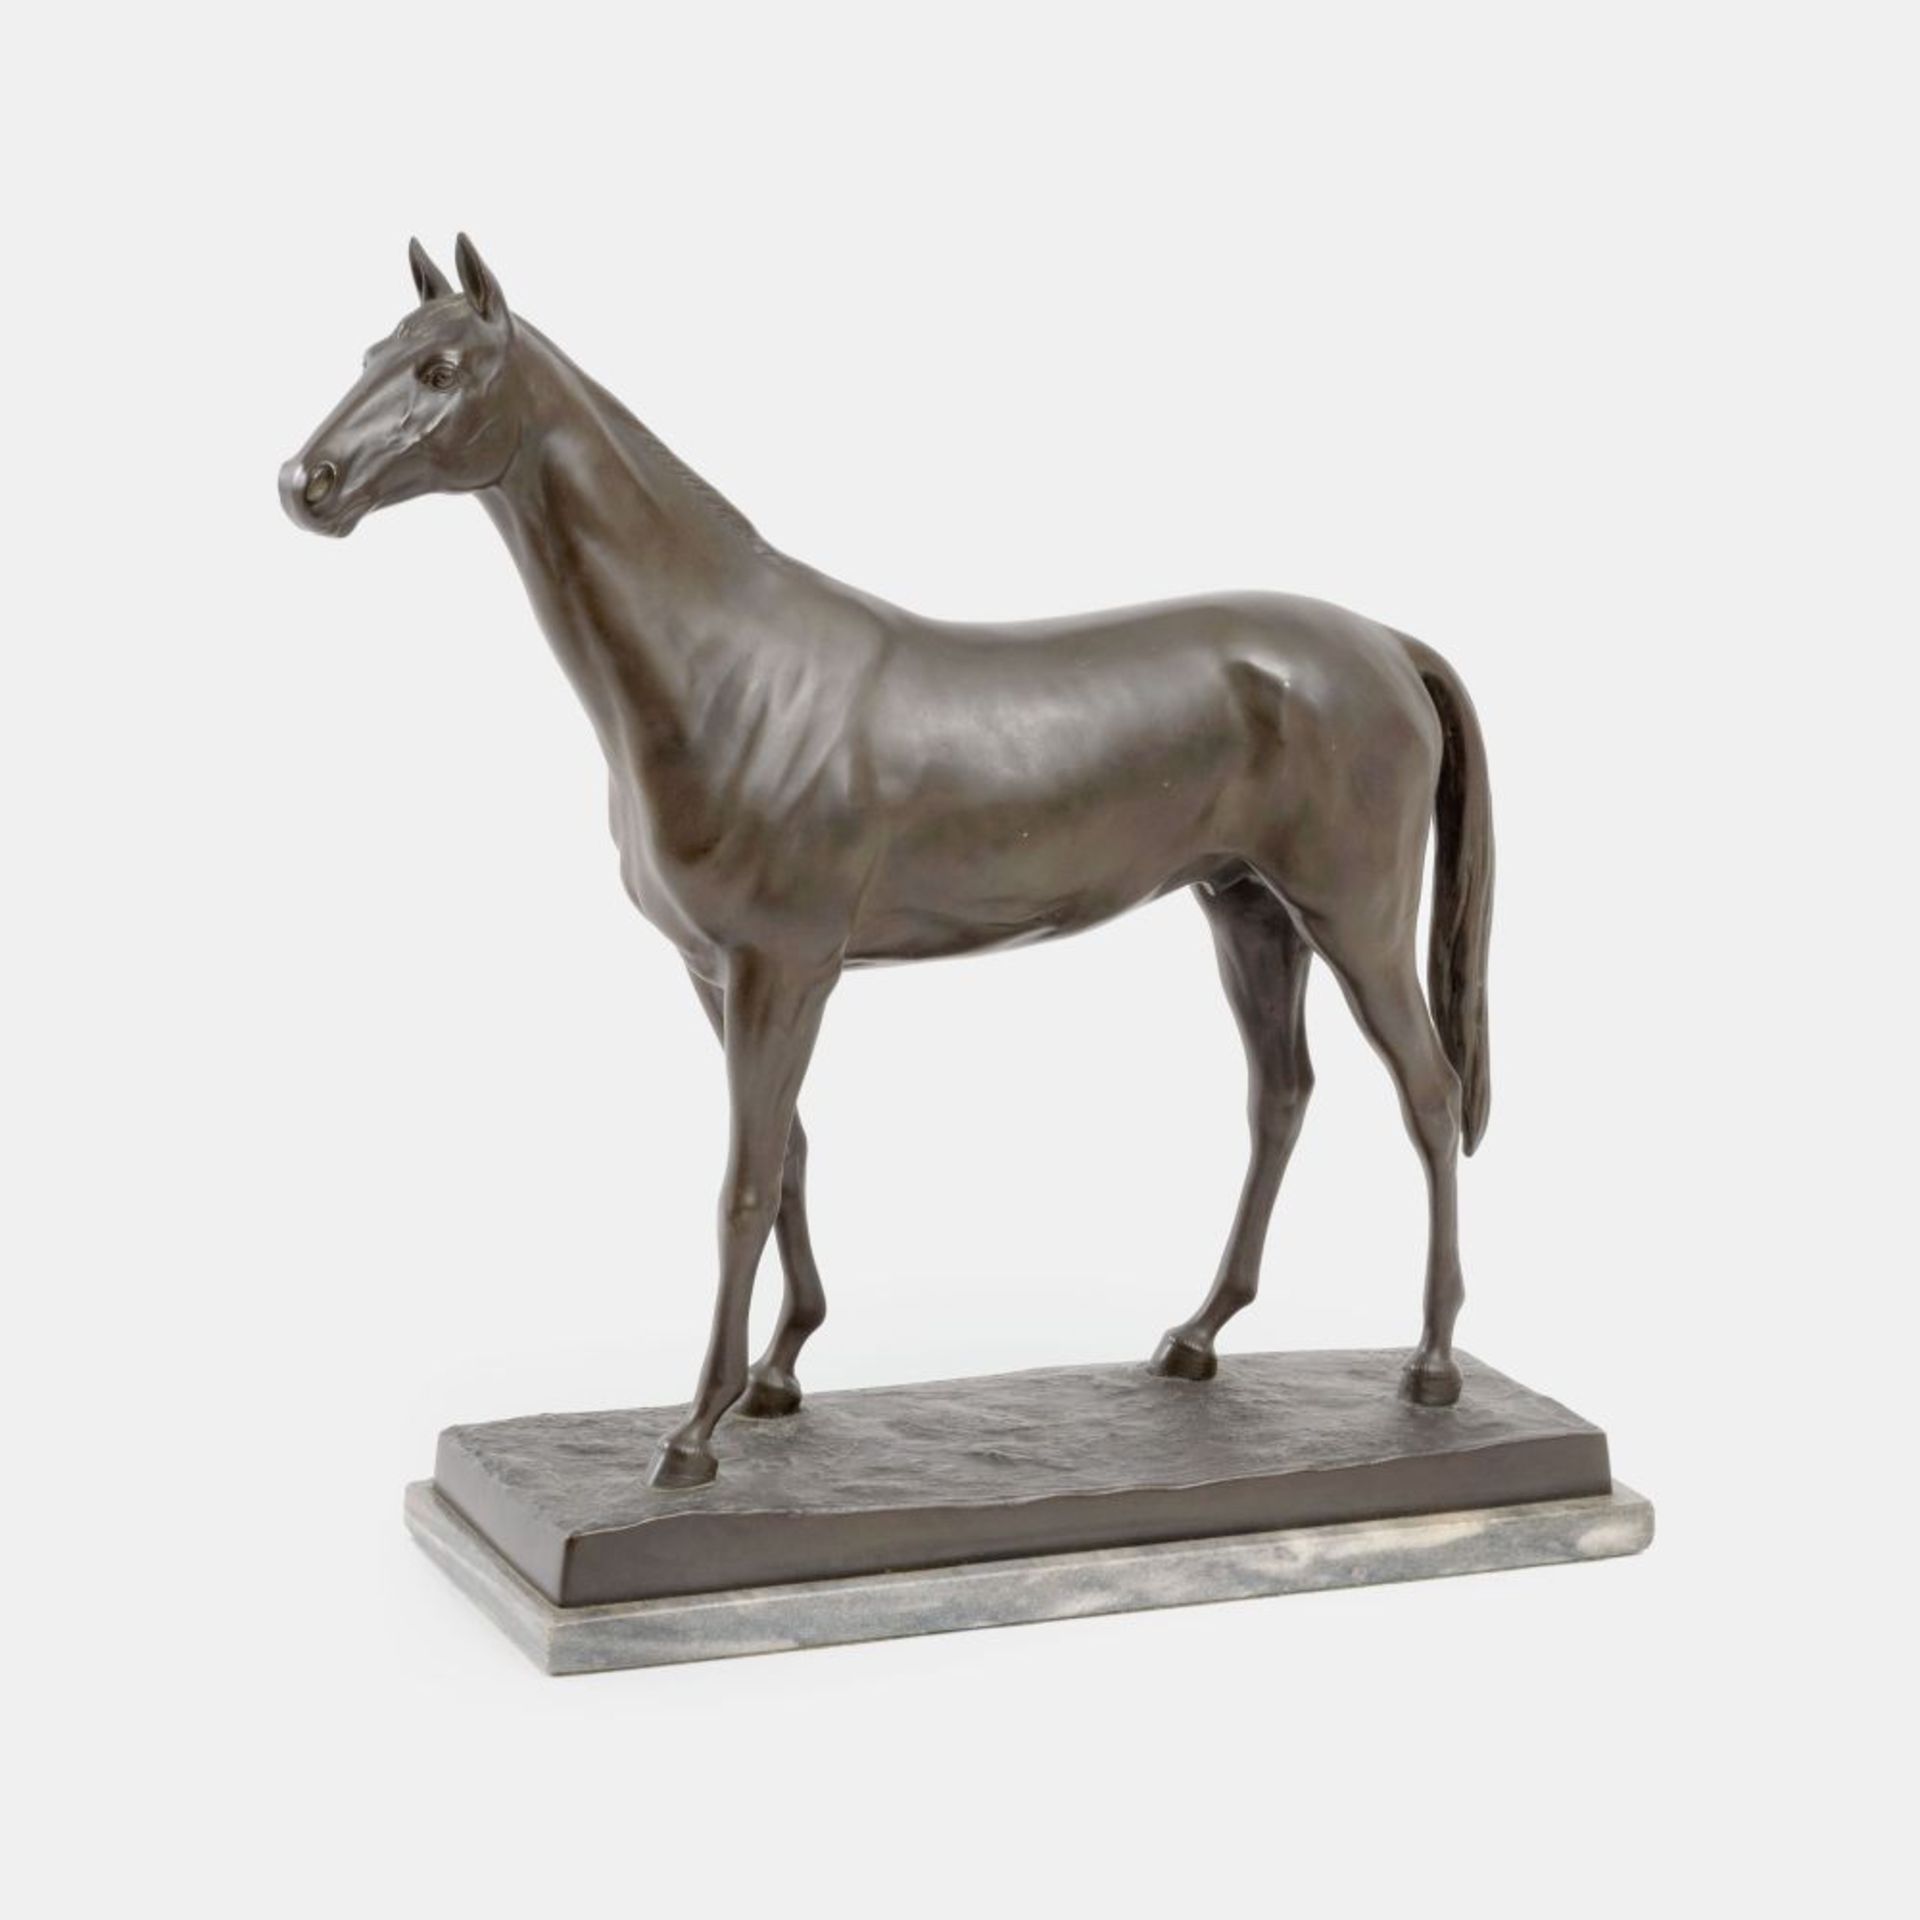 Zeller, August (Bordentown, New Jersey 1863 - Pittsburgh, Pennsylvania 1918). A Standing horse.